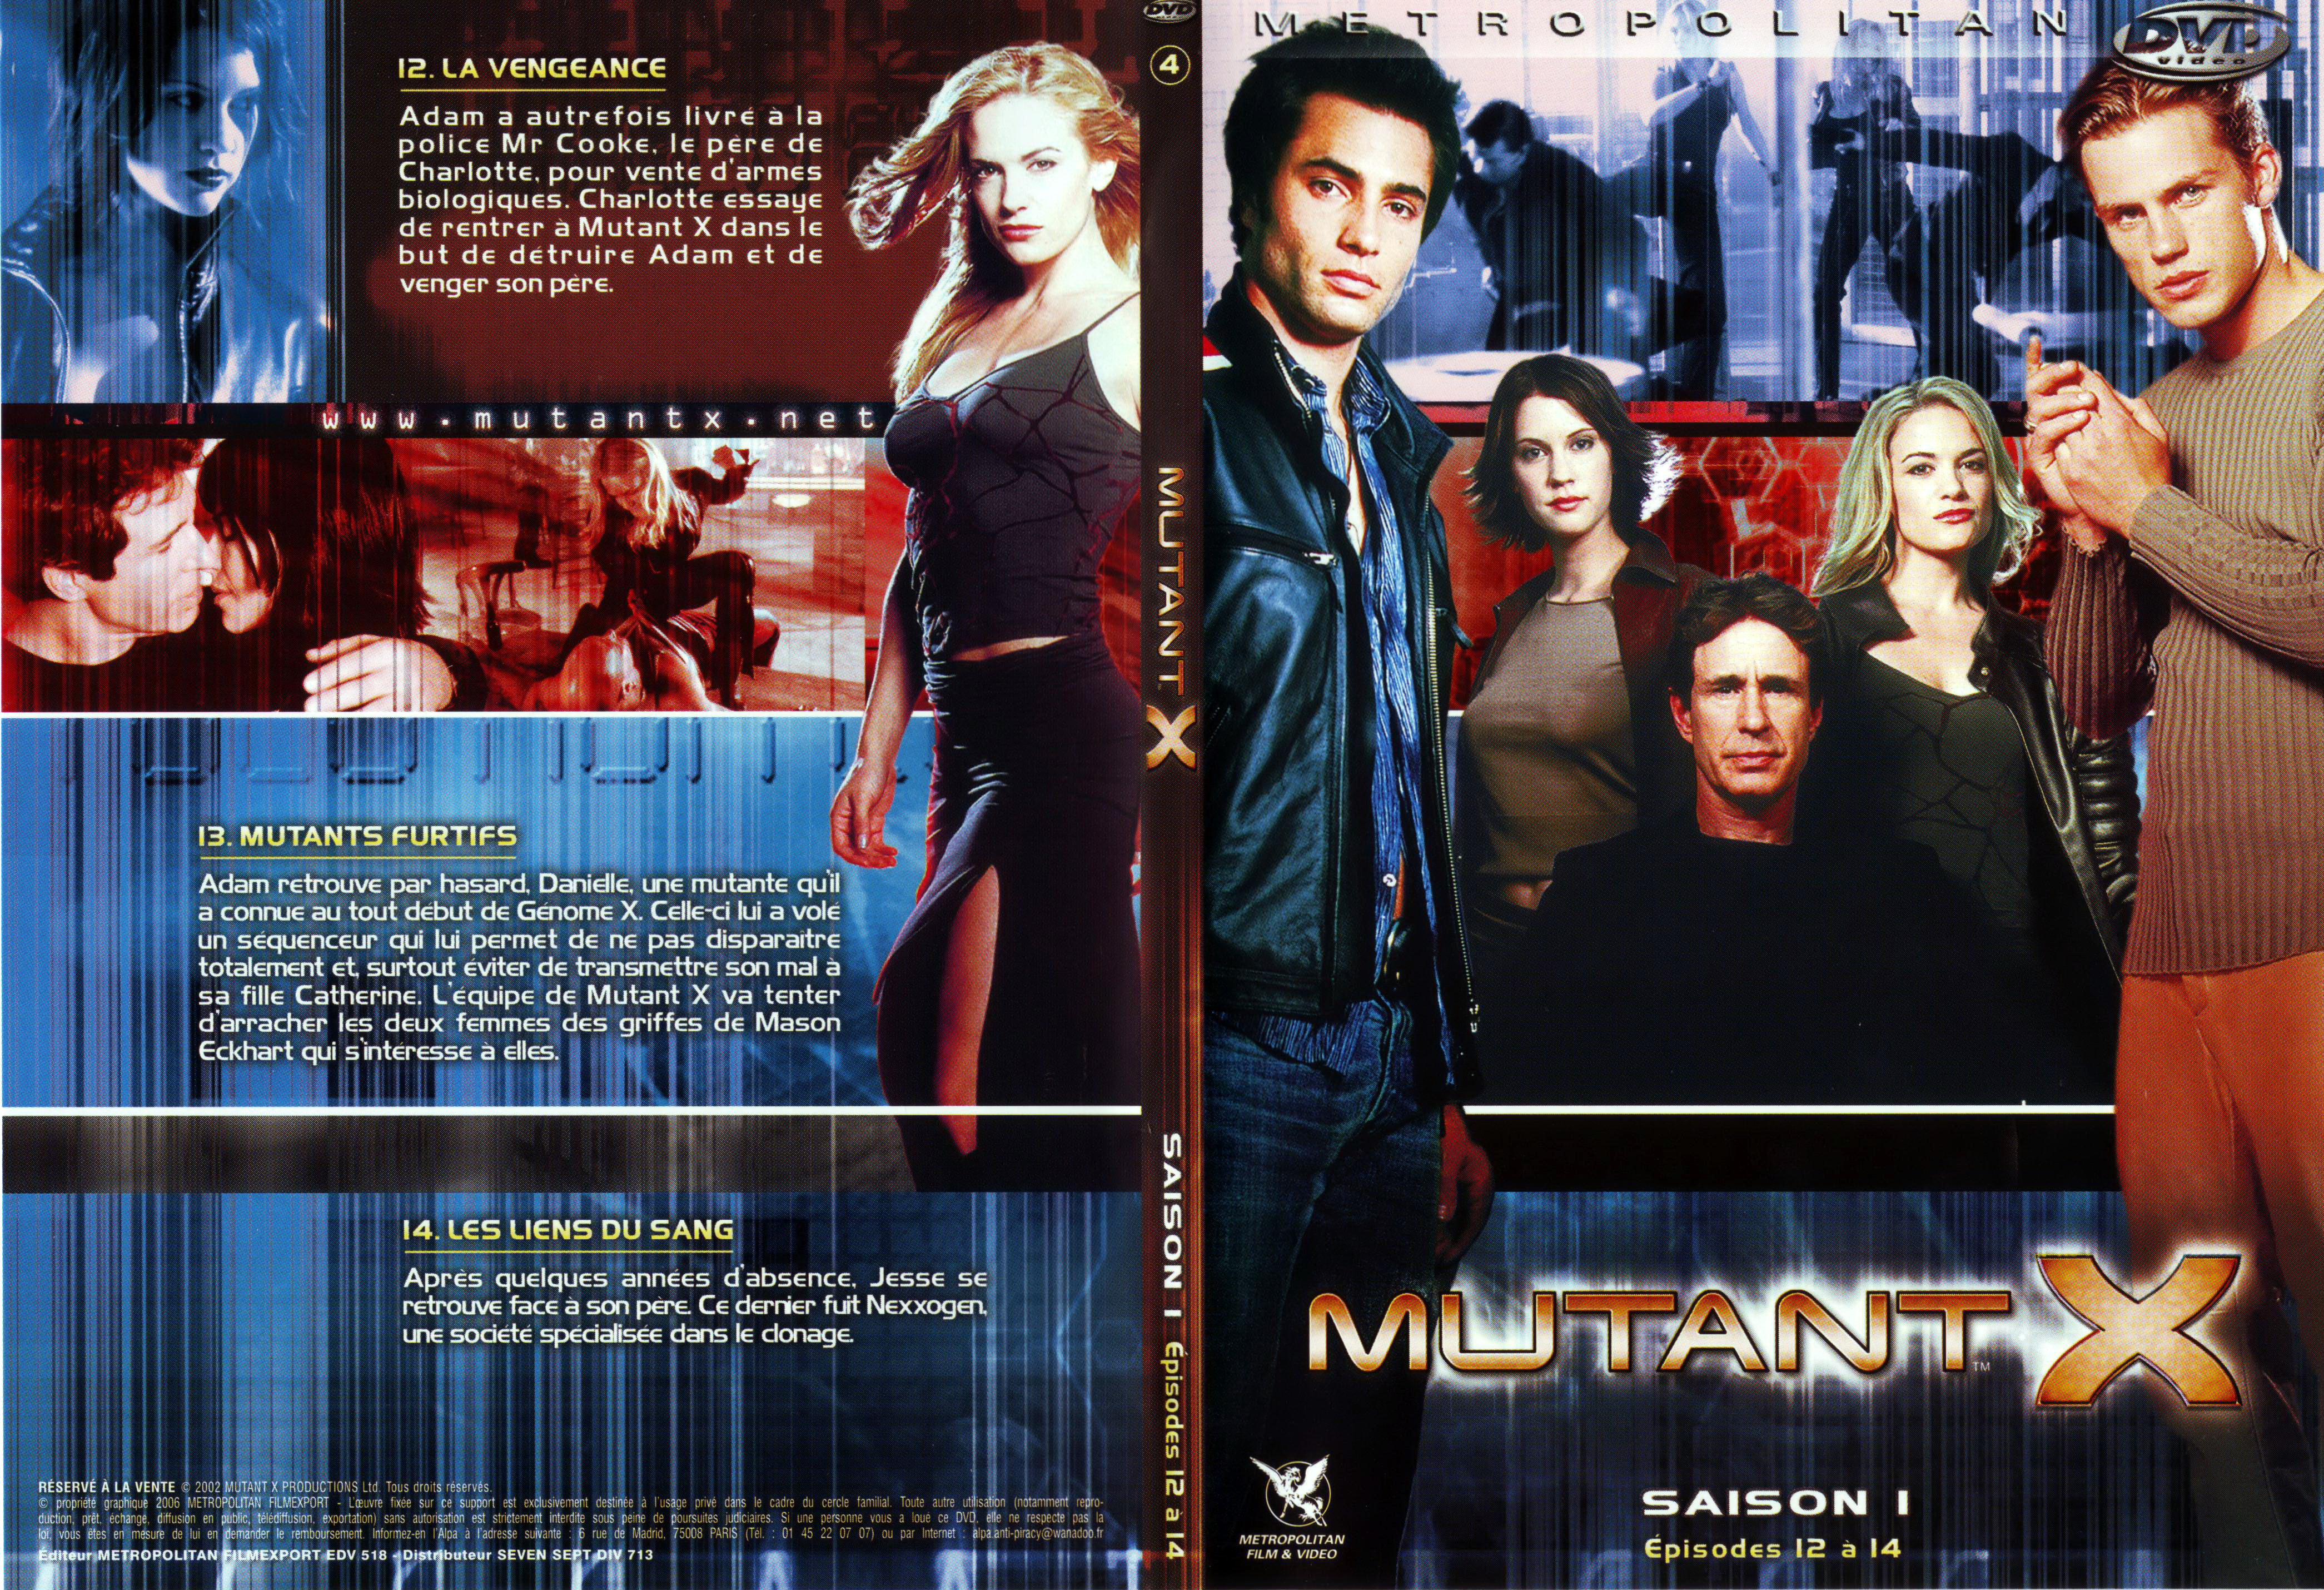 Jaquette DVD Mutant X saison 1 DVD 4